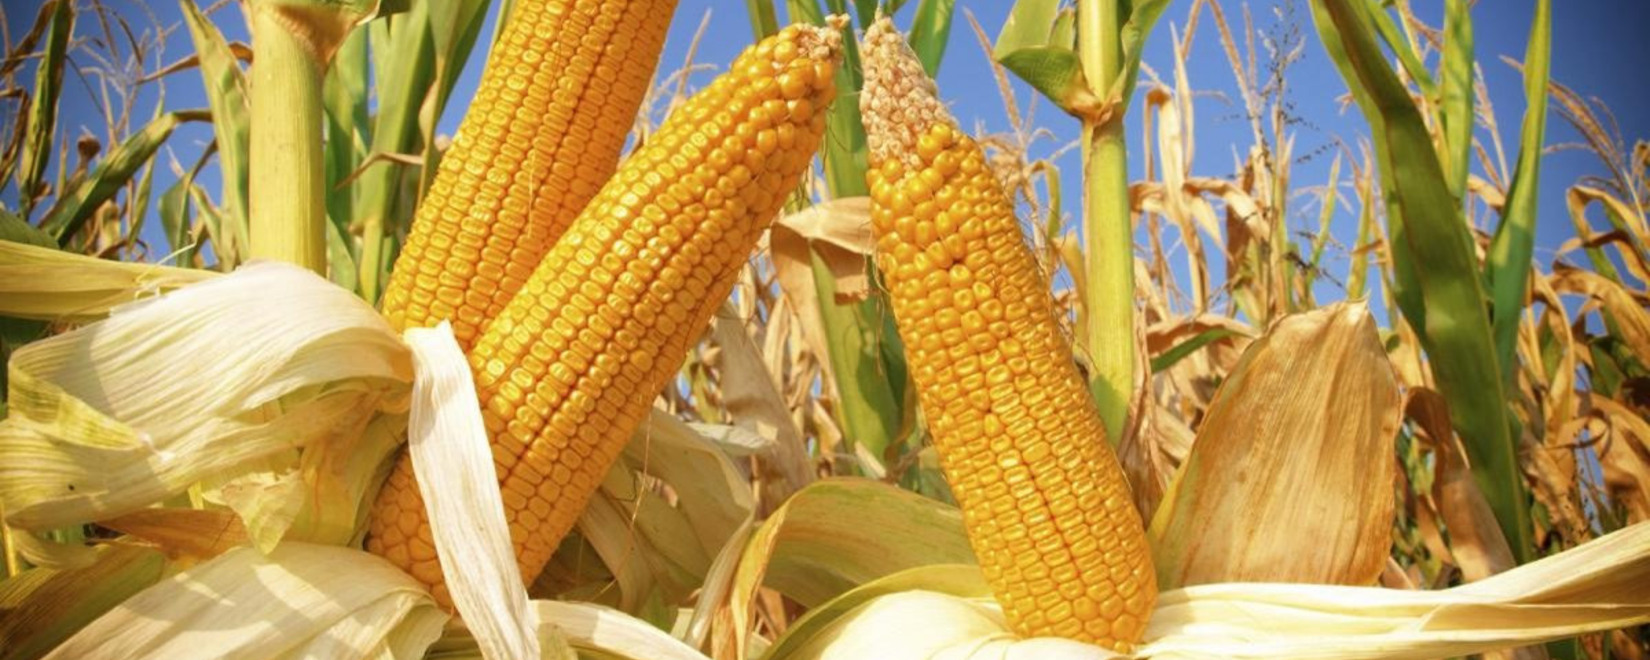 Египет отменил тендер на импорт кукурузы